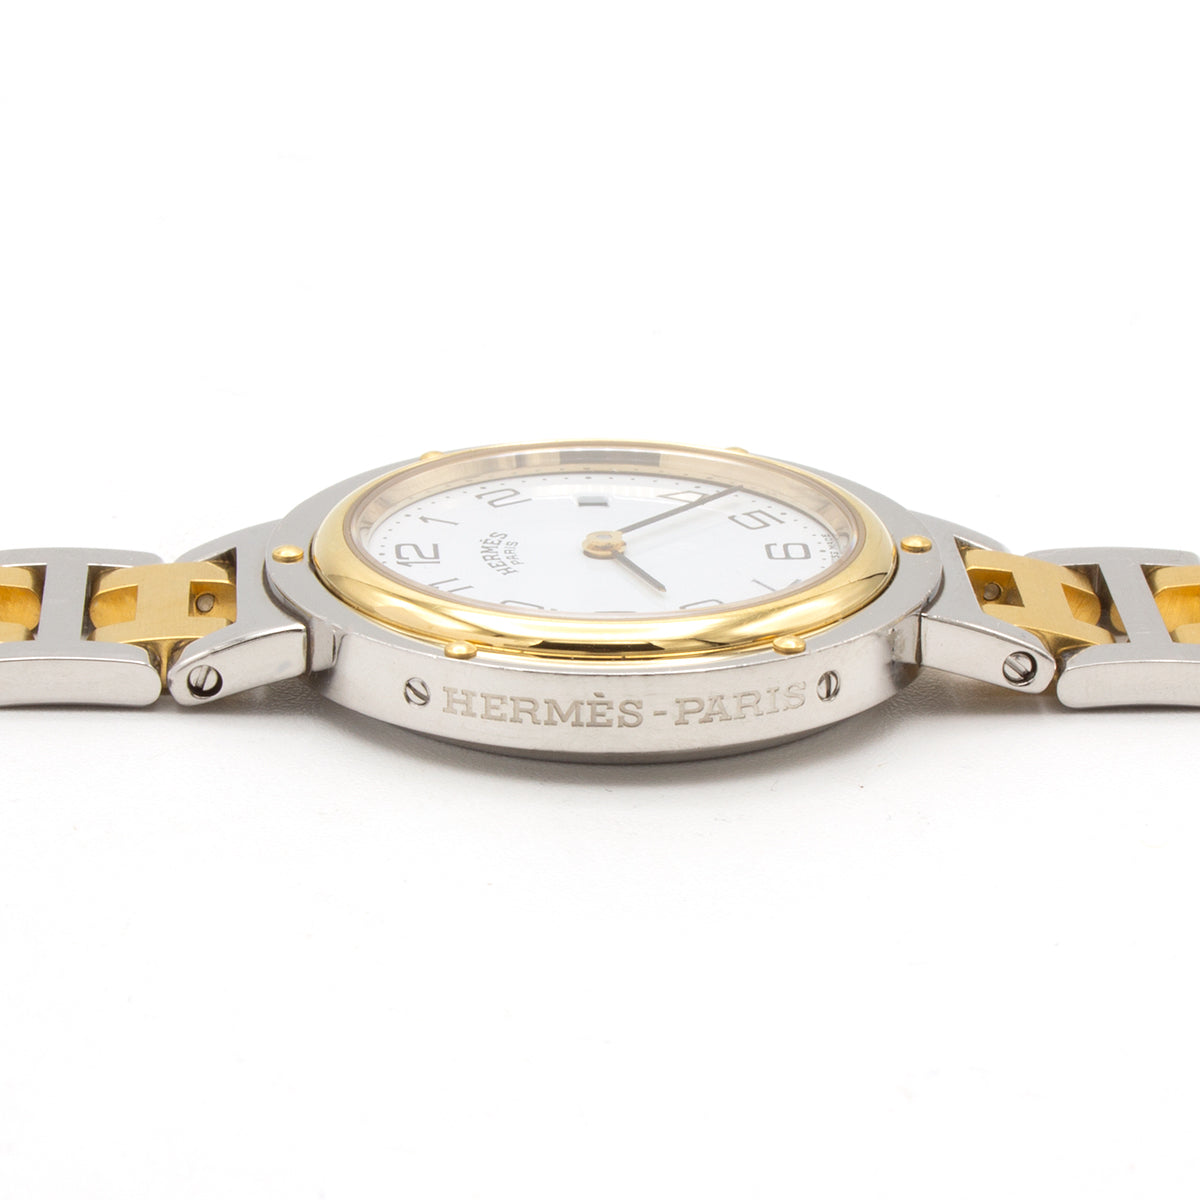 Hermes Clipper 30mm watch